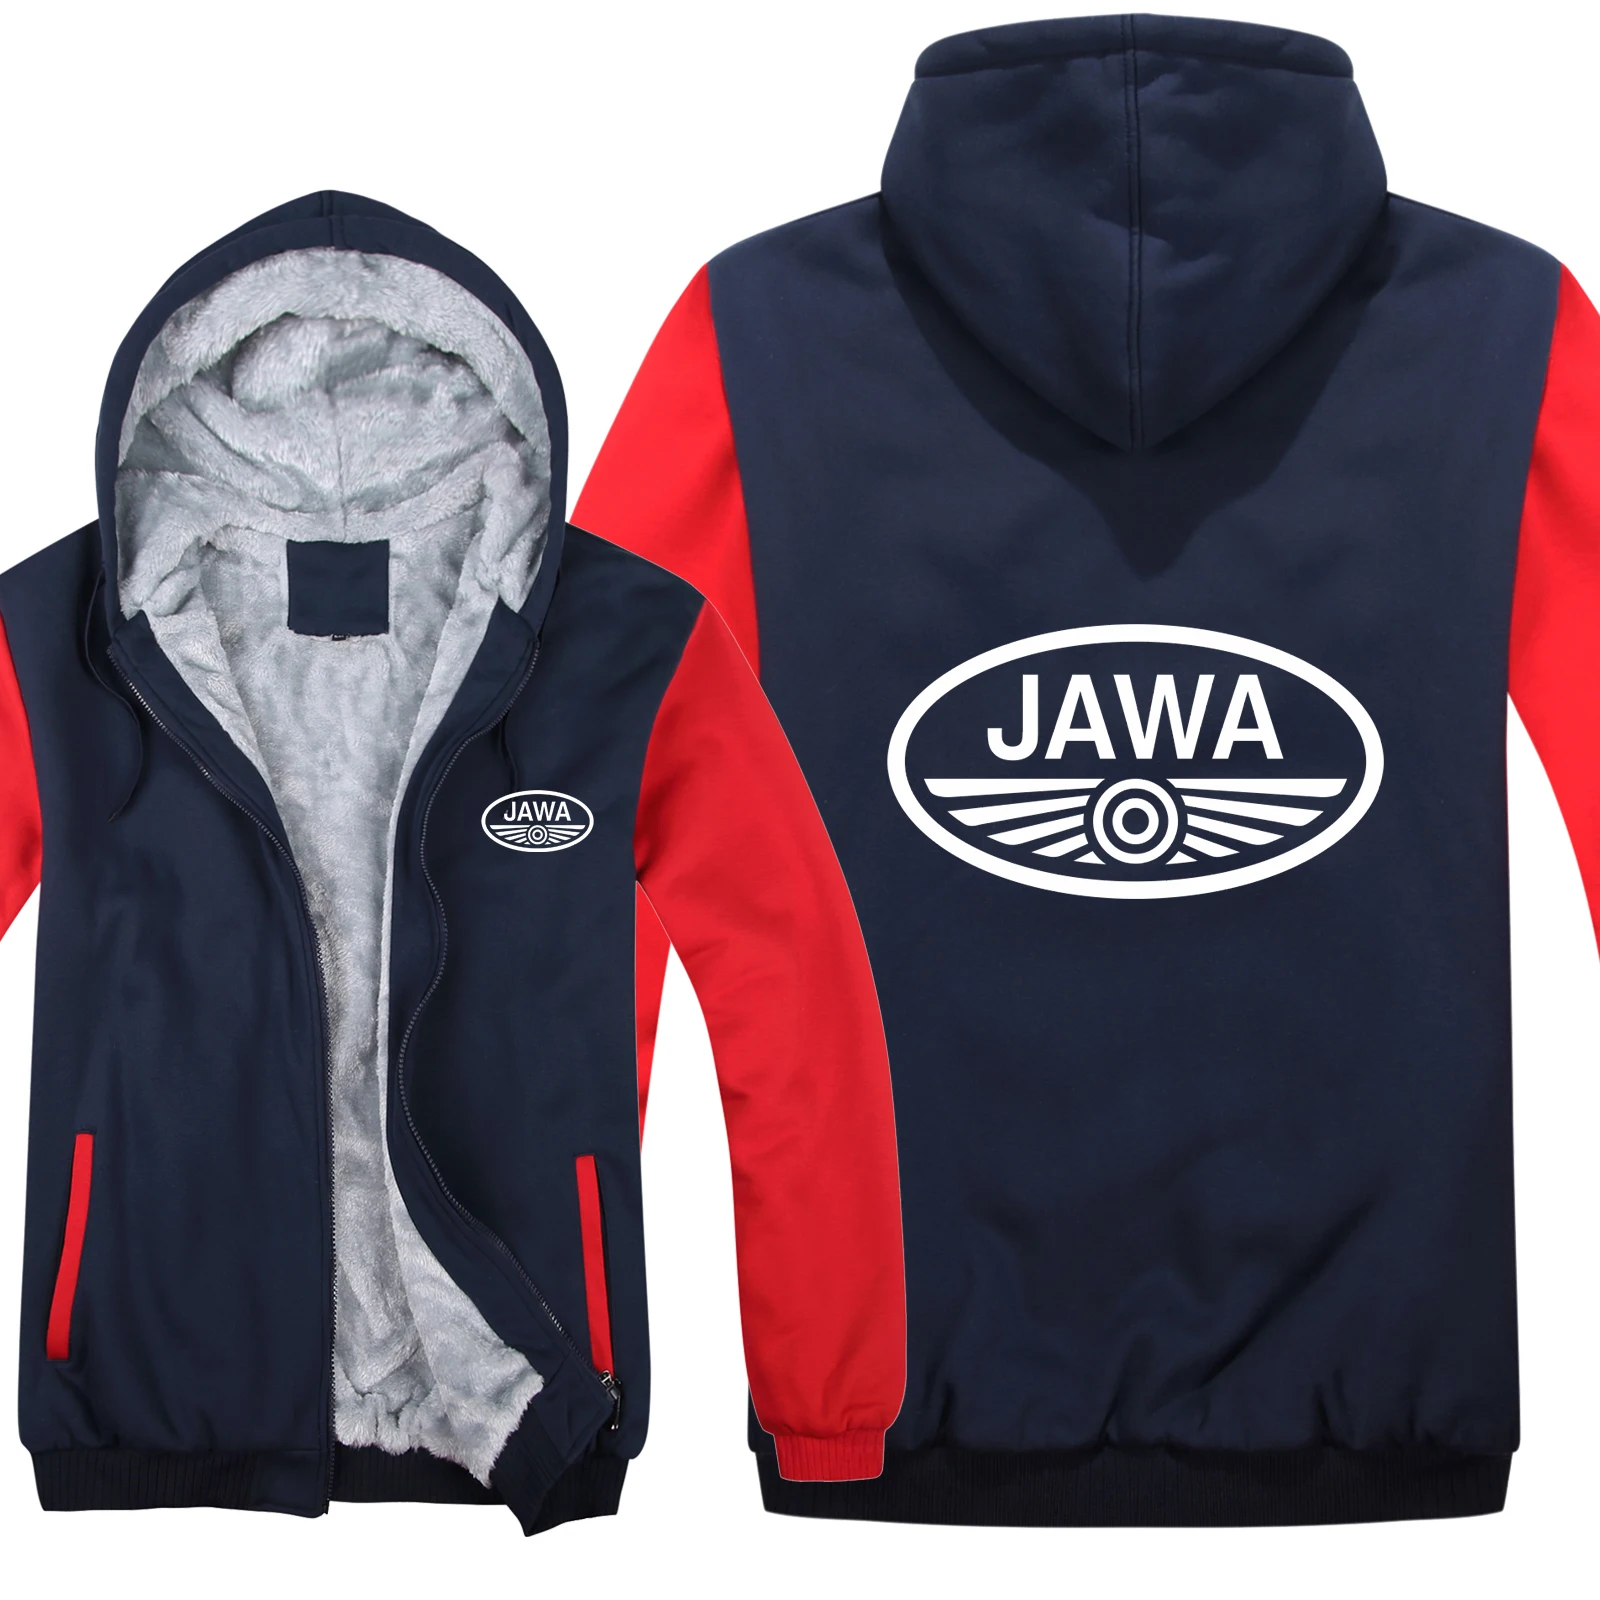 Зима Jawa мотоцикл толстовки куртка Модный пуловер Мужское пальто шерстяная подкладка флис Jawa толстовки пальто